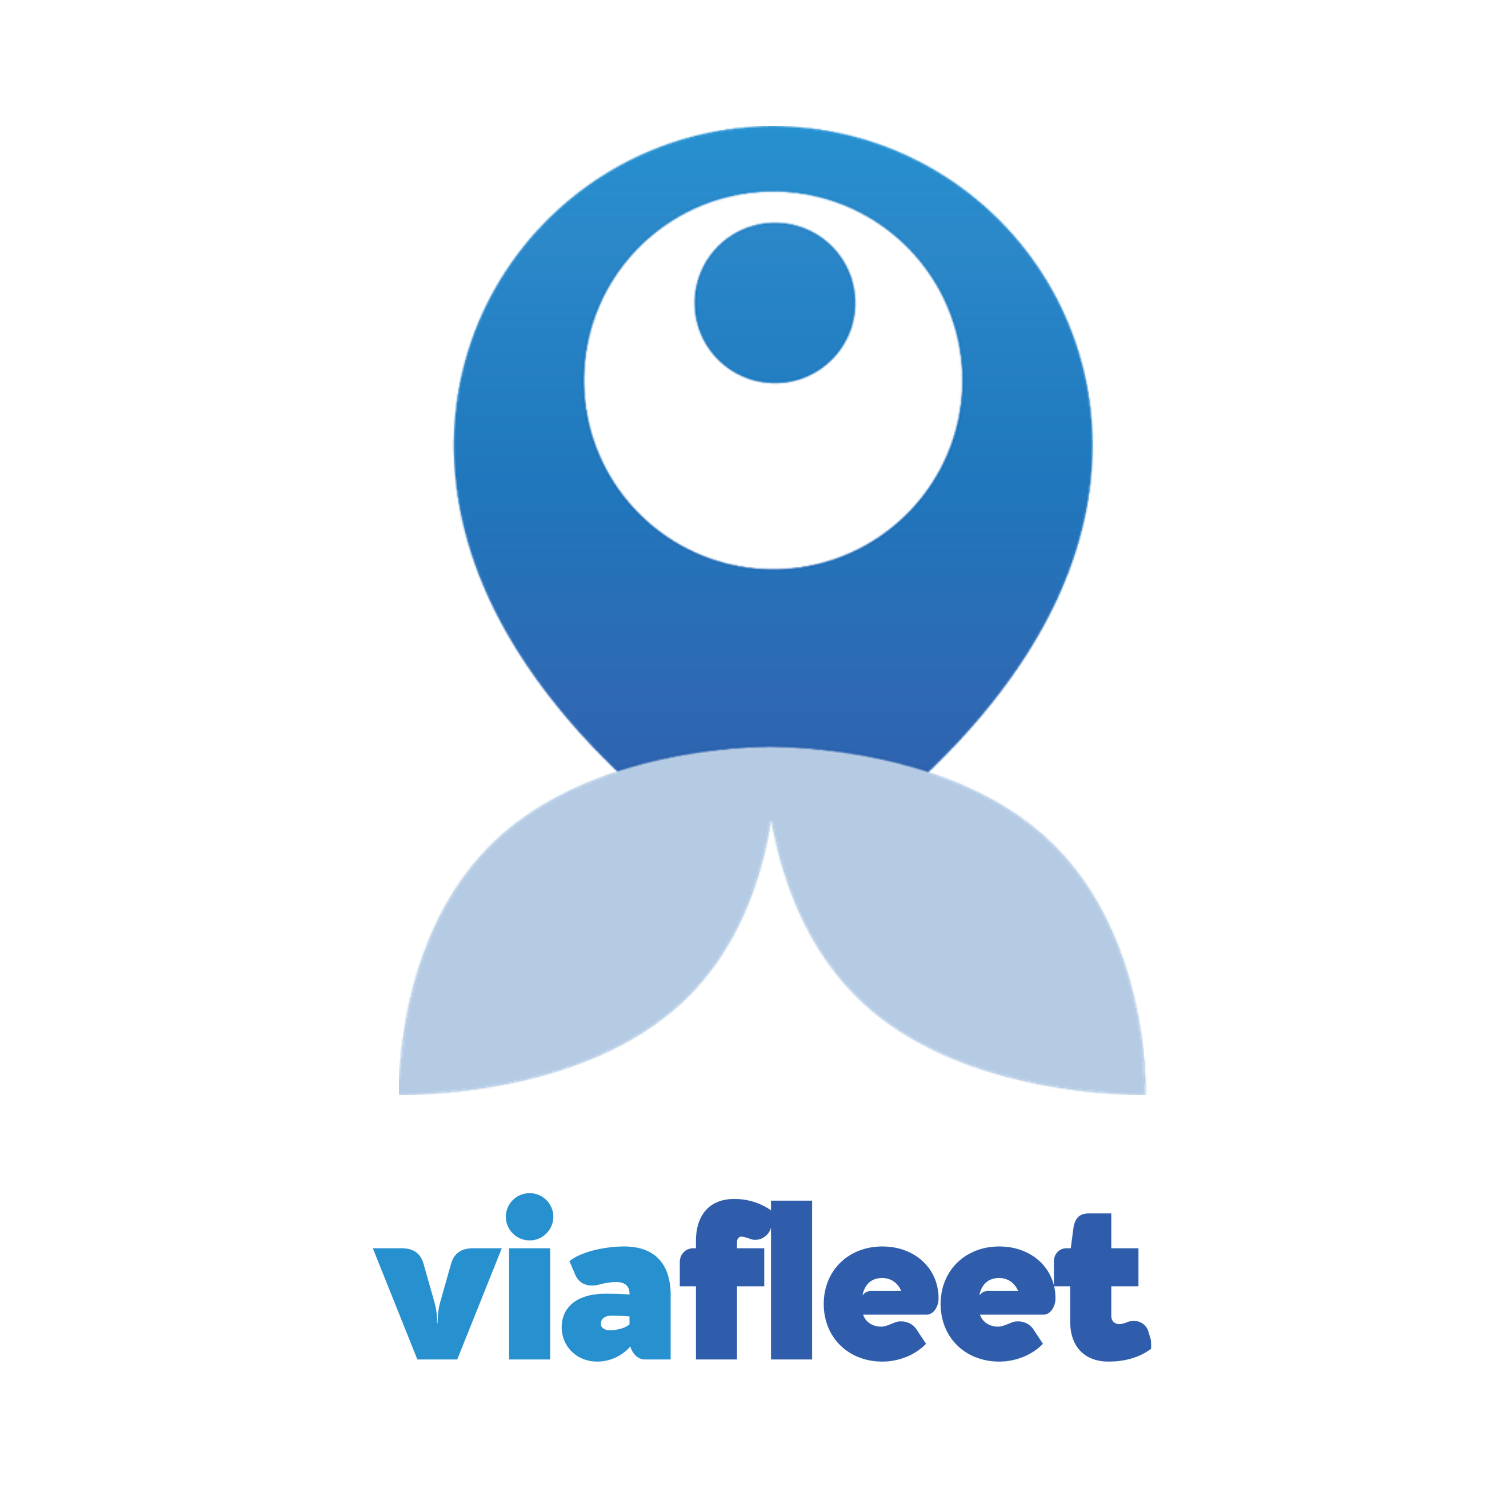 Viafleet fleet management simple